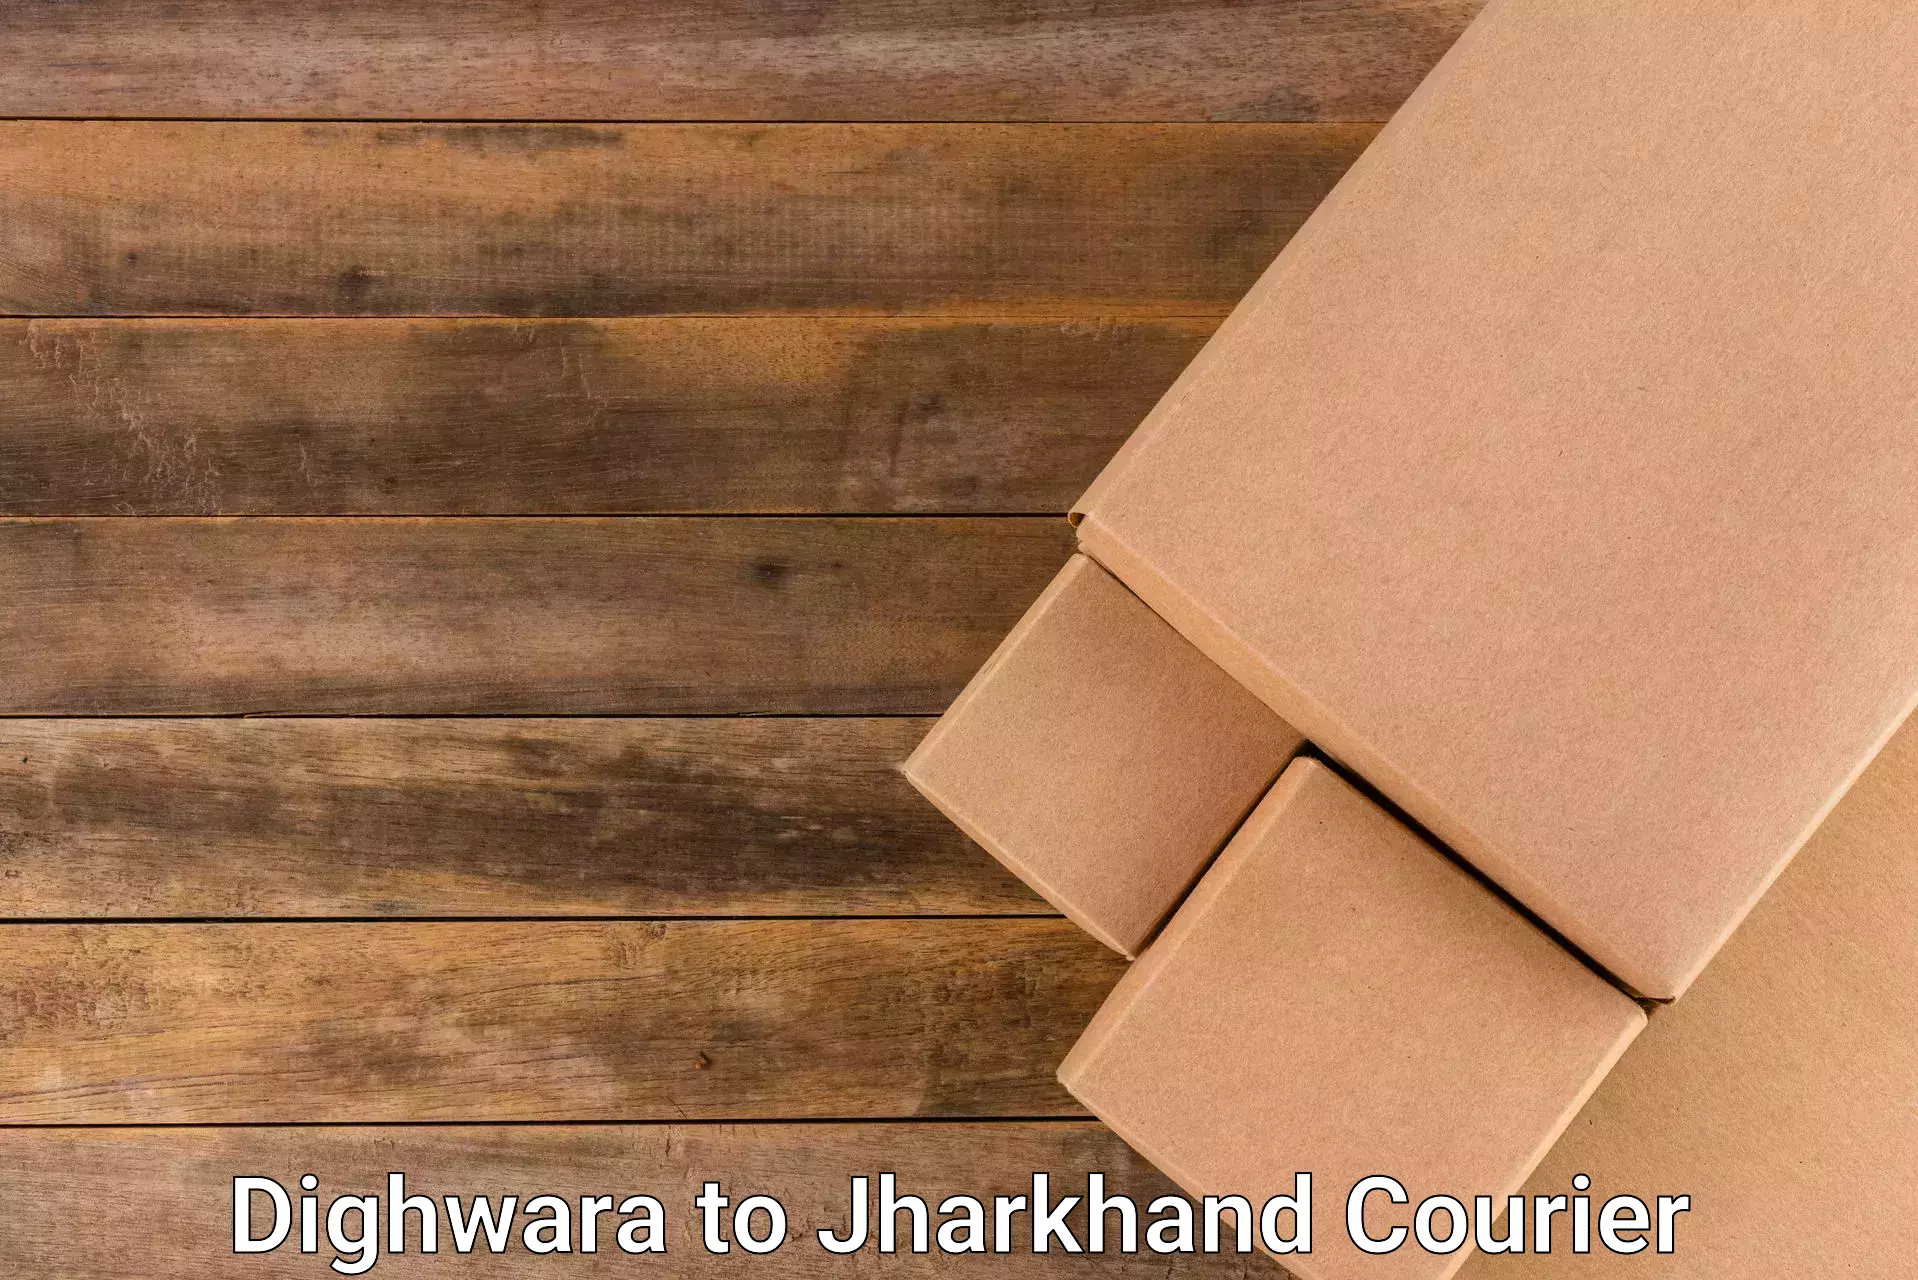 Secure package delivery in Dighwara to Hazaribagh